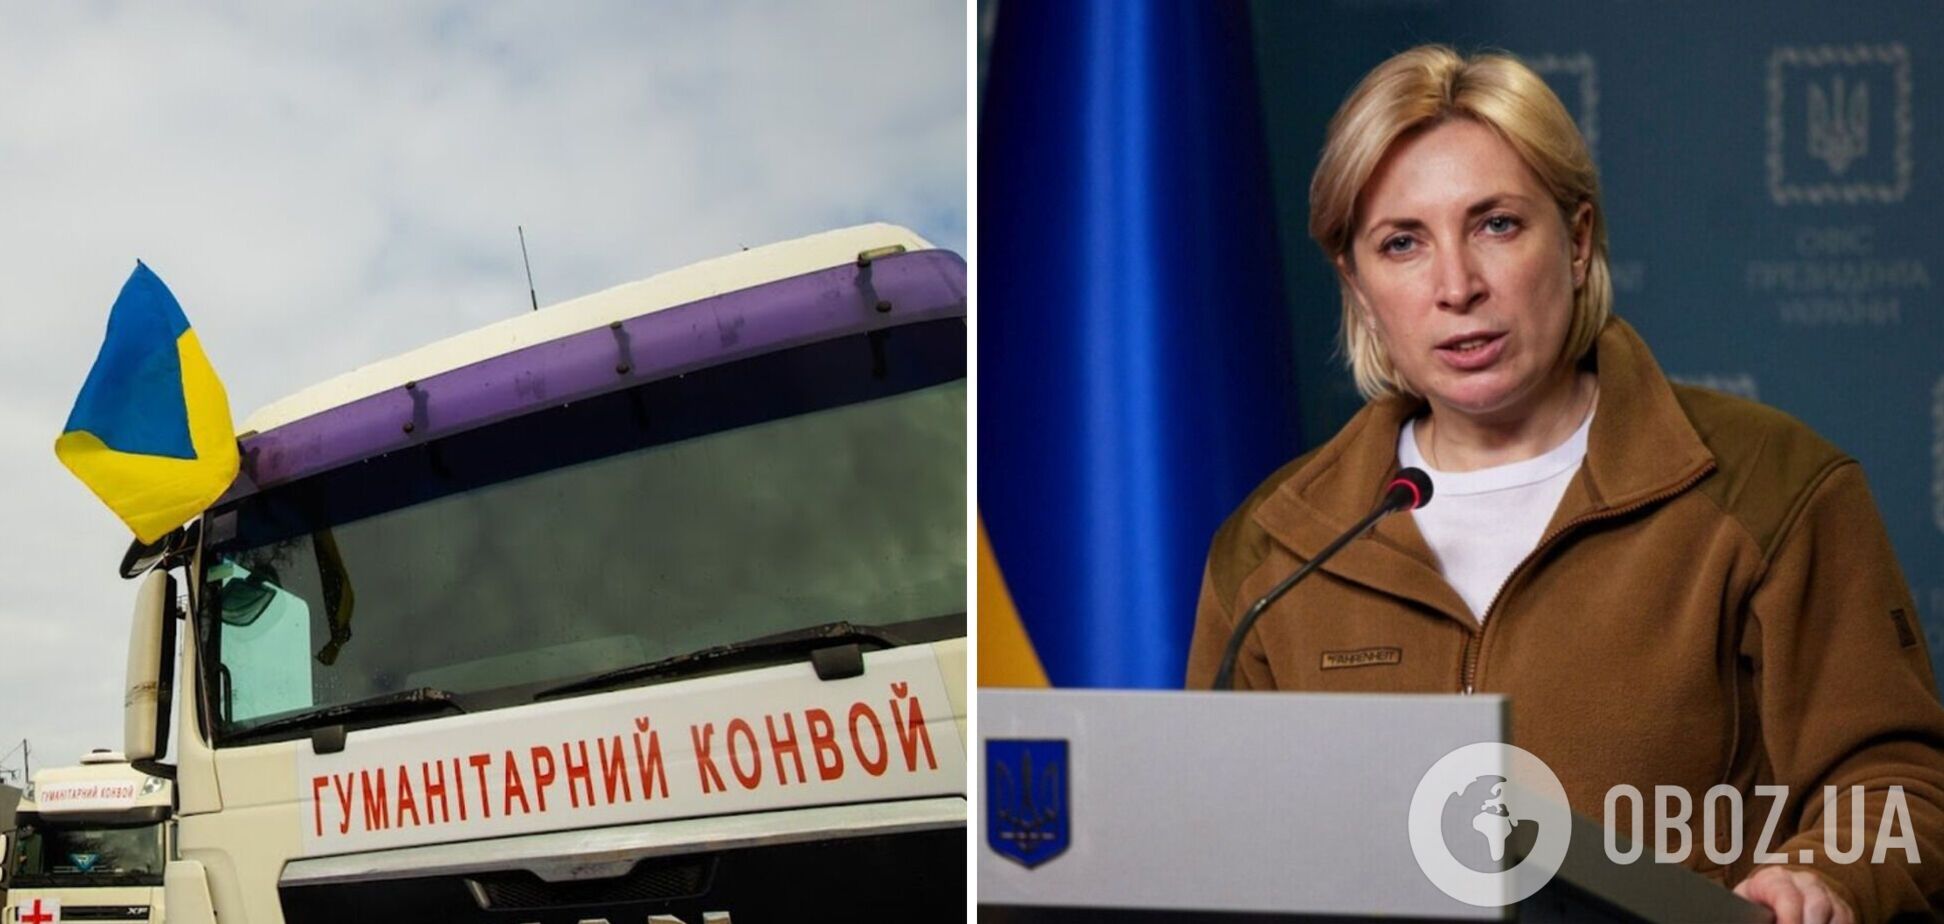 Сьогодні спрацювало 2 українських гумкоридори, якими евакуювали 7331 людину, – Верещук